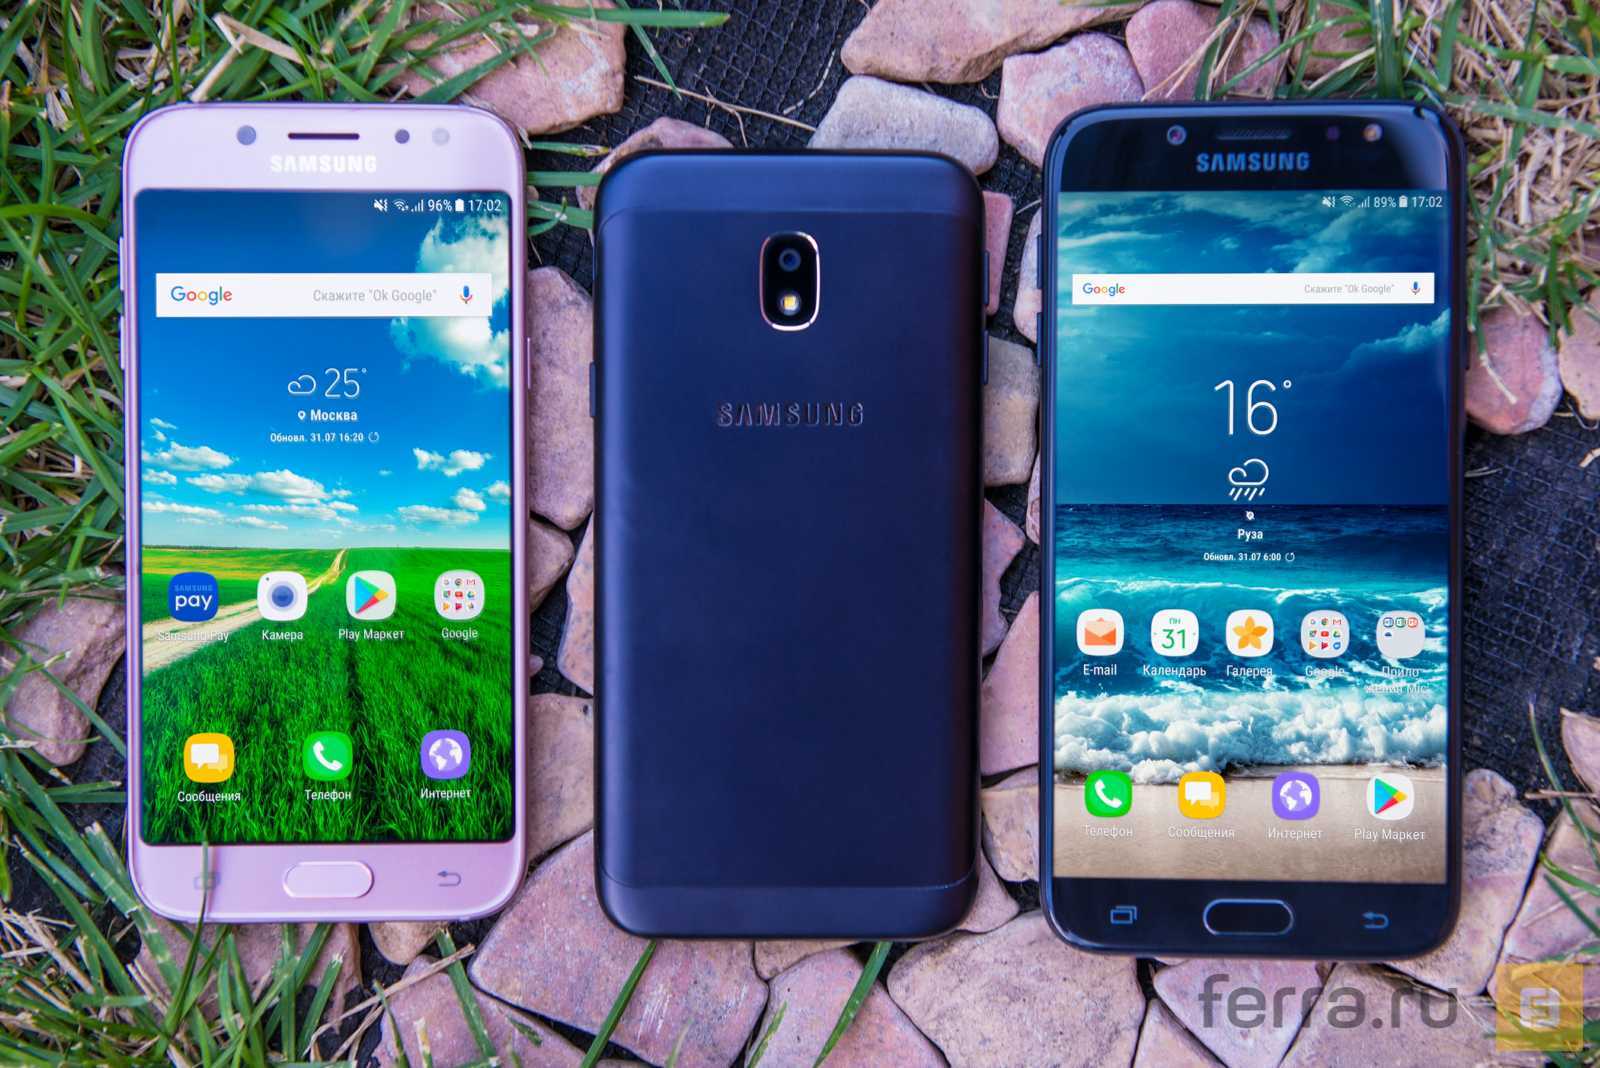 Компания Samsung представила продолжение достаточно удачной серии Galaxy J Преемником J3 стала улучшенная версия J3 Pro, которая получила ряд отличий, включ